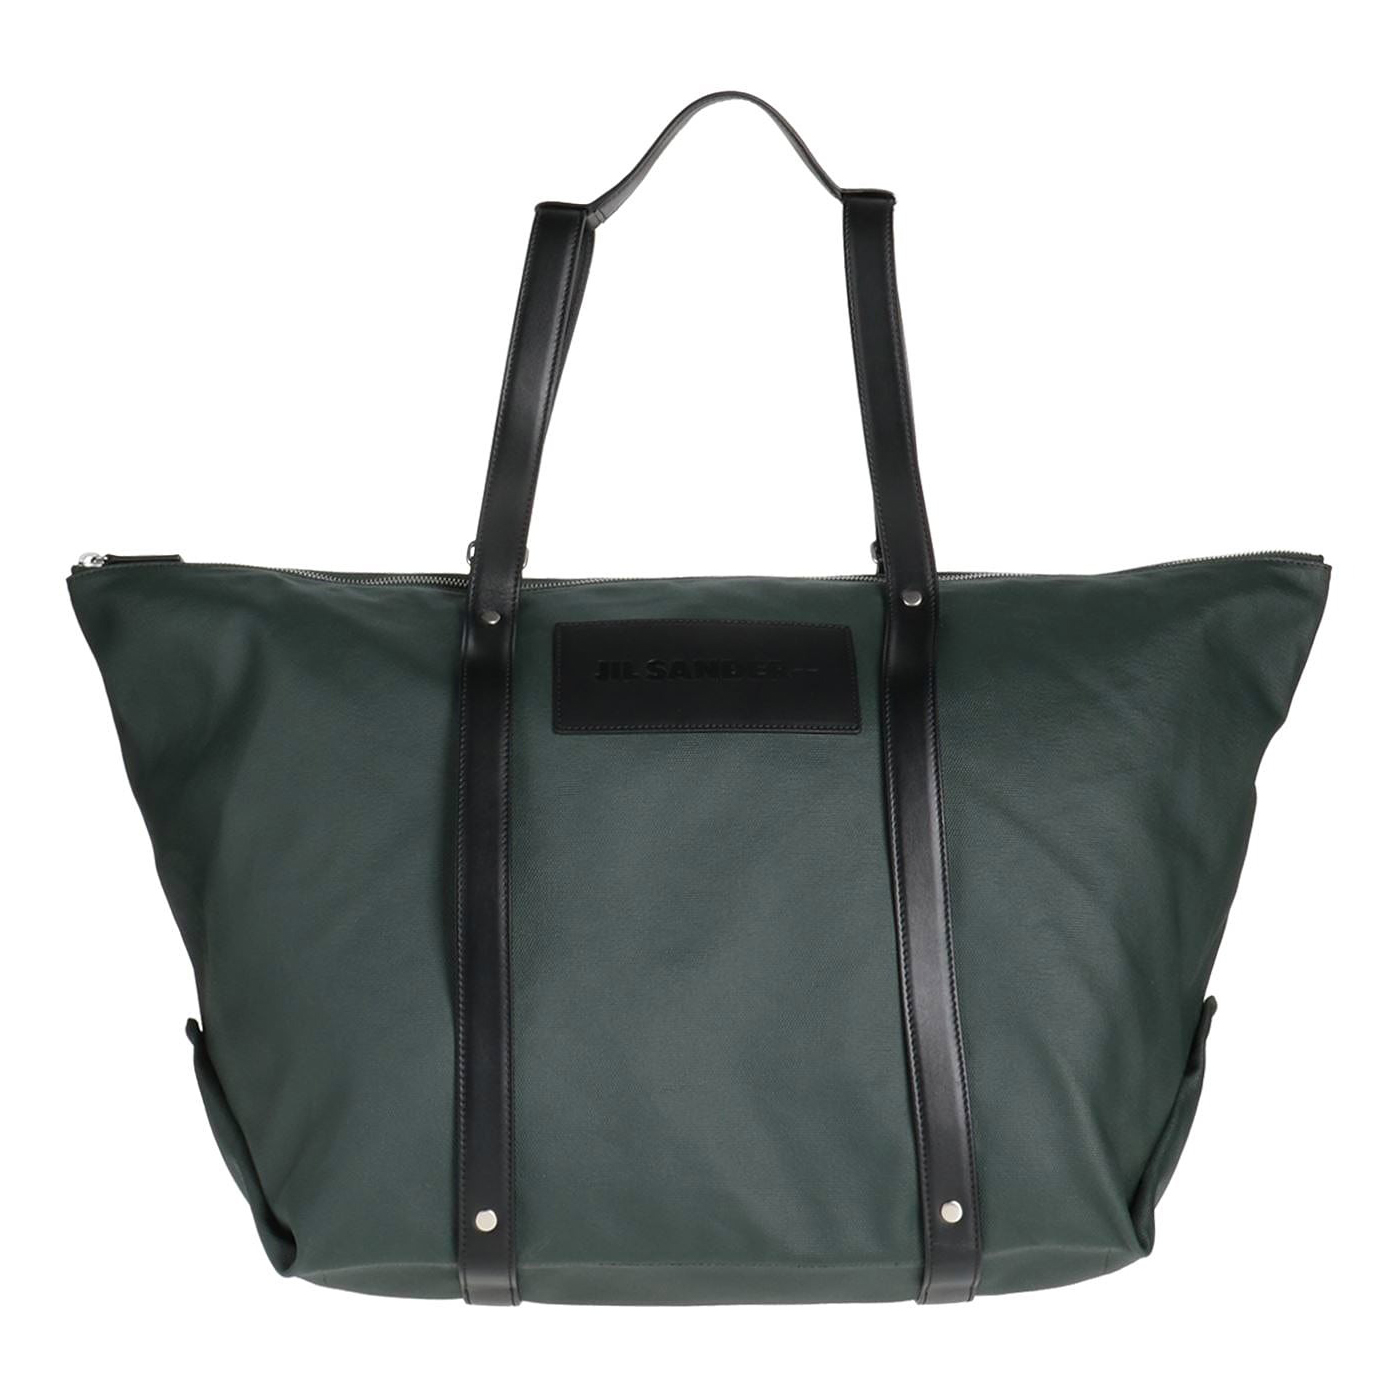 Сумка Jil Sander, темно-зеленый сумка тоут женская из мягкой пу кожи матовая 2020